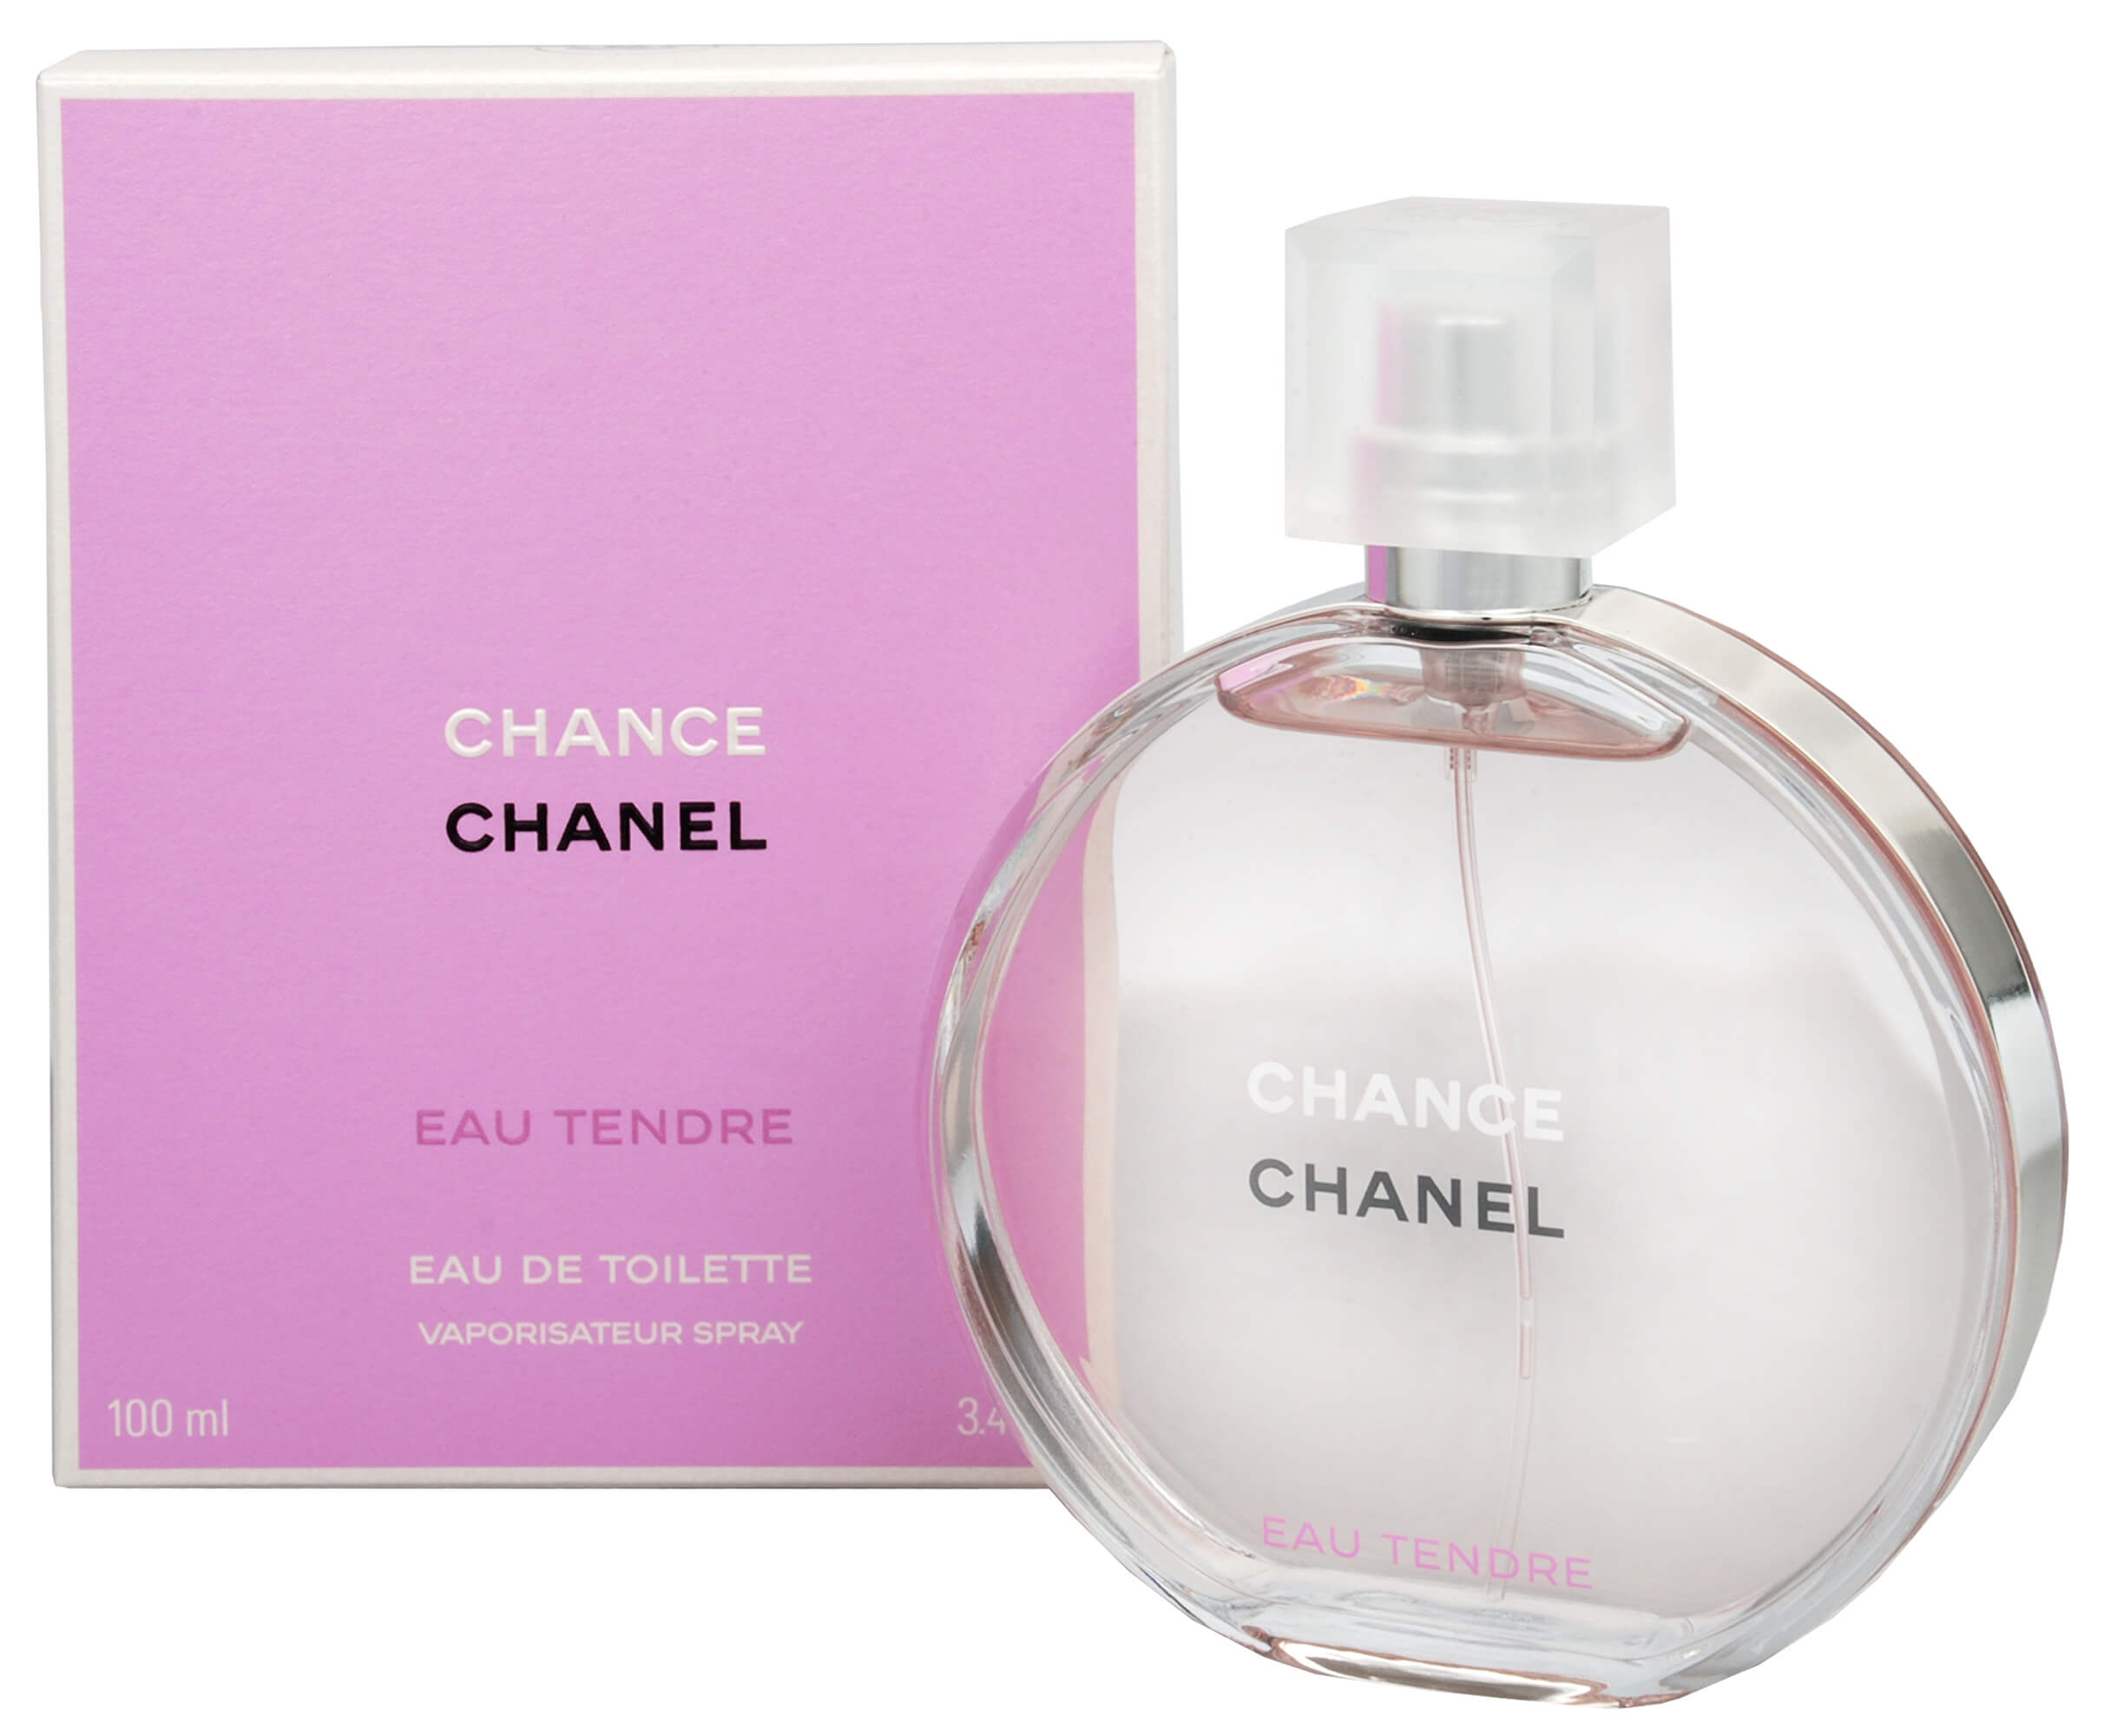 Chanel Chance Eau Tendre - EDT - SLEVA - bez krabičky 100 ml + 2 měsíce na vrácení zboží